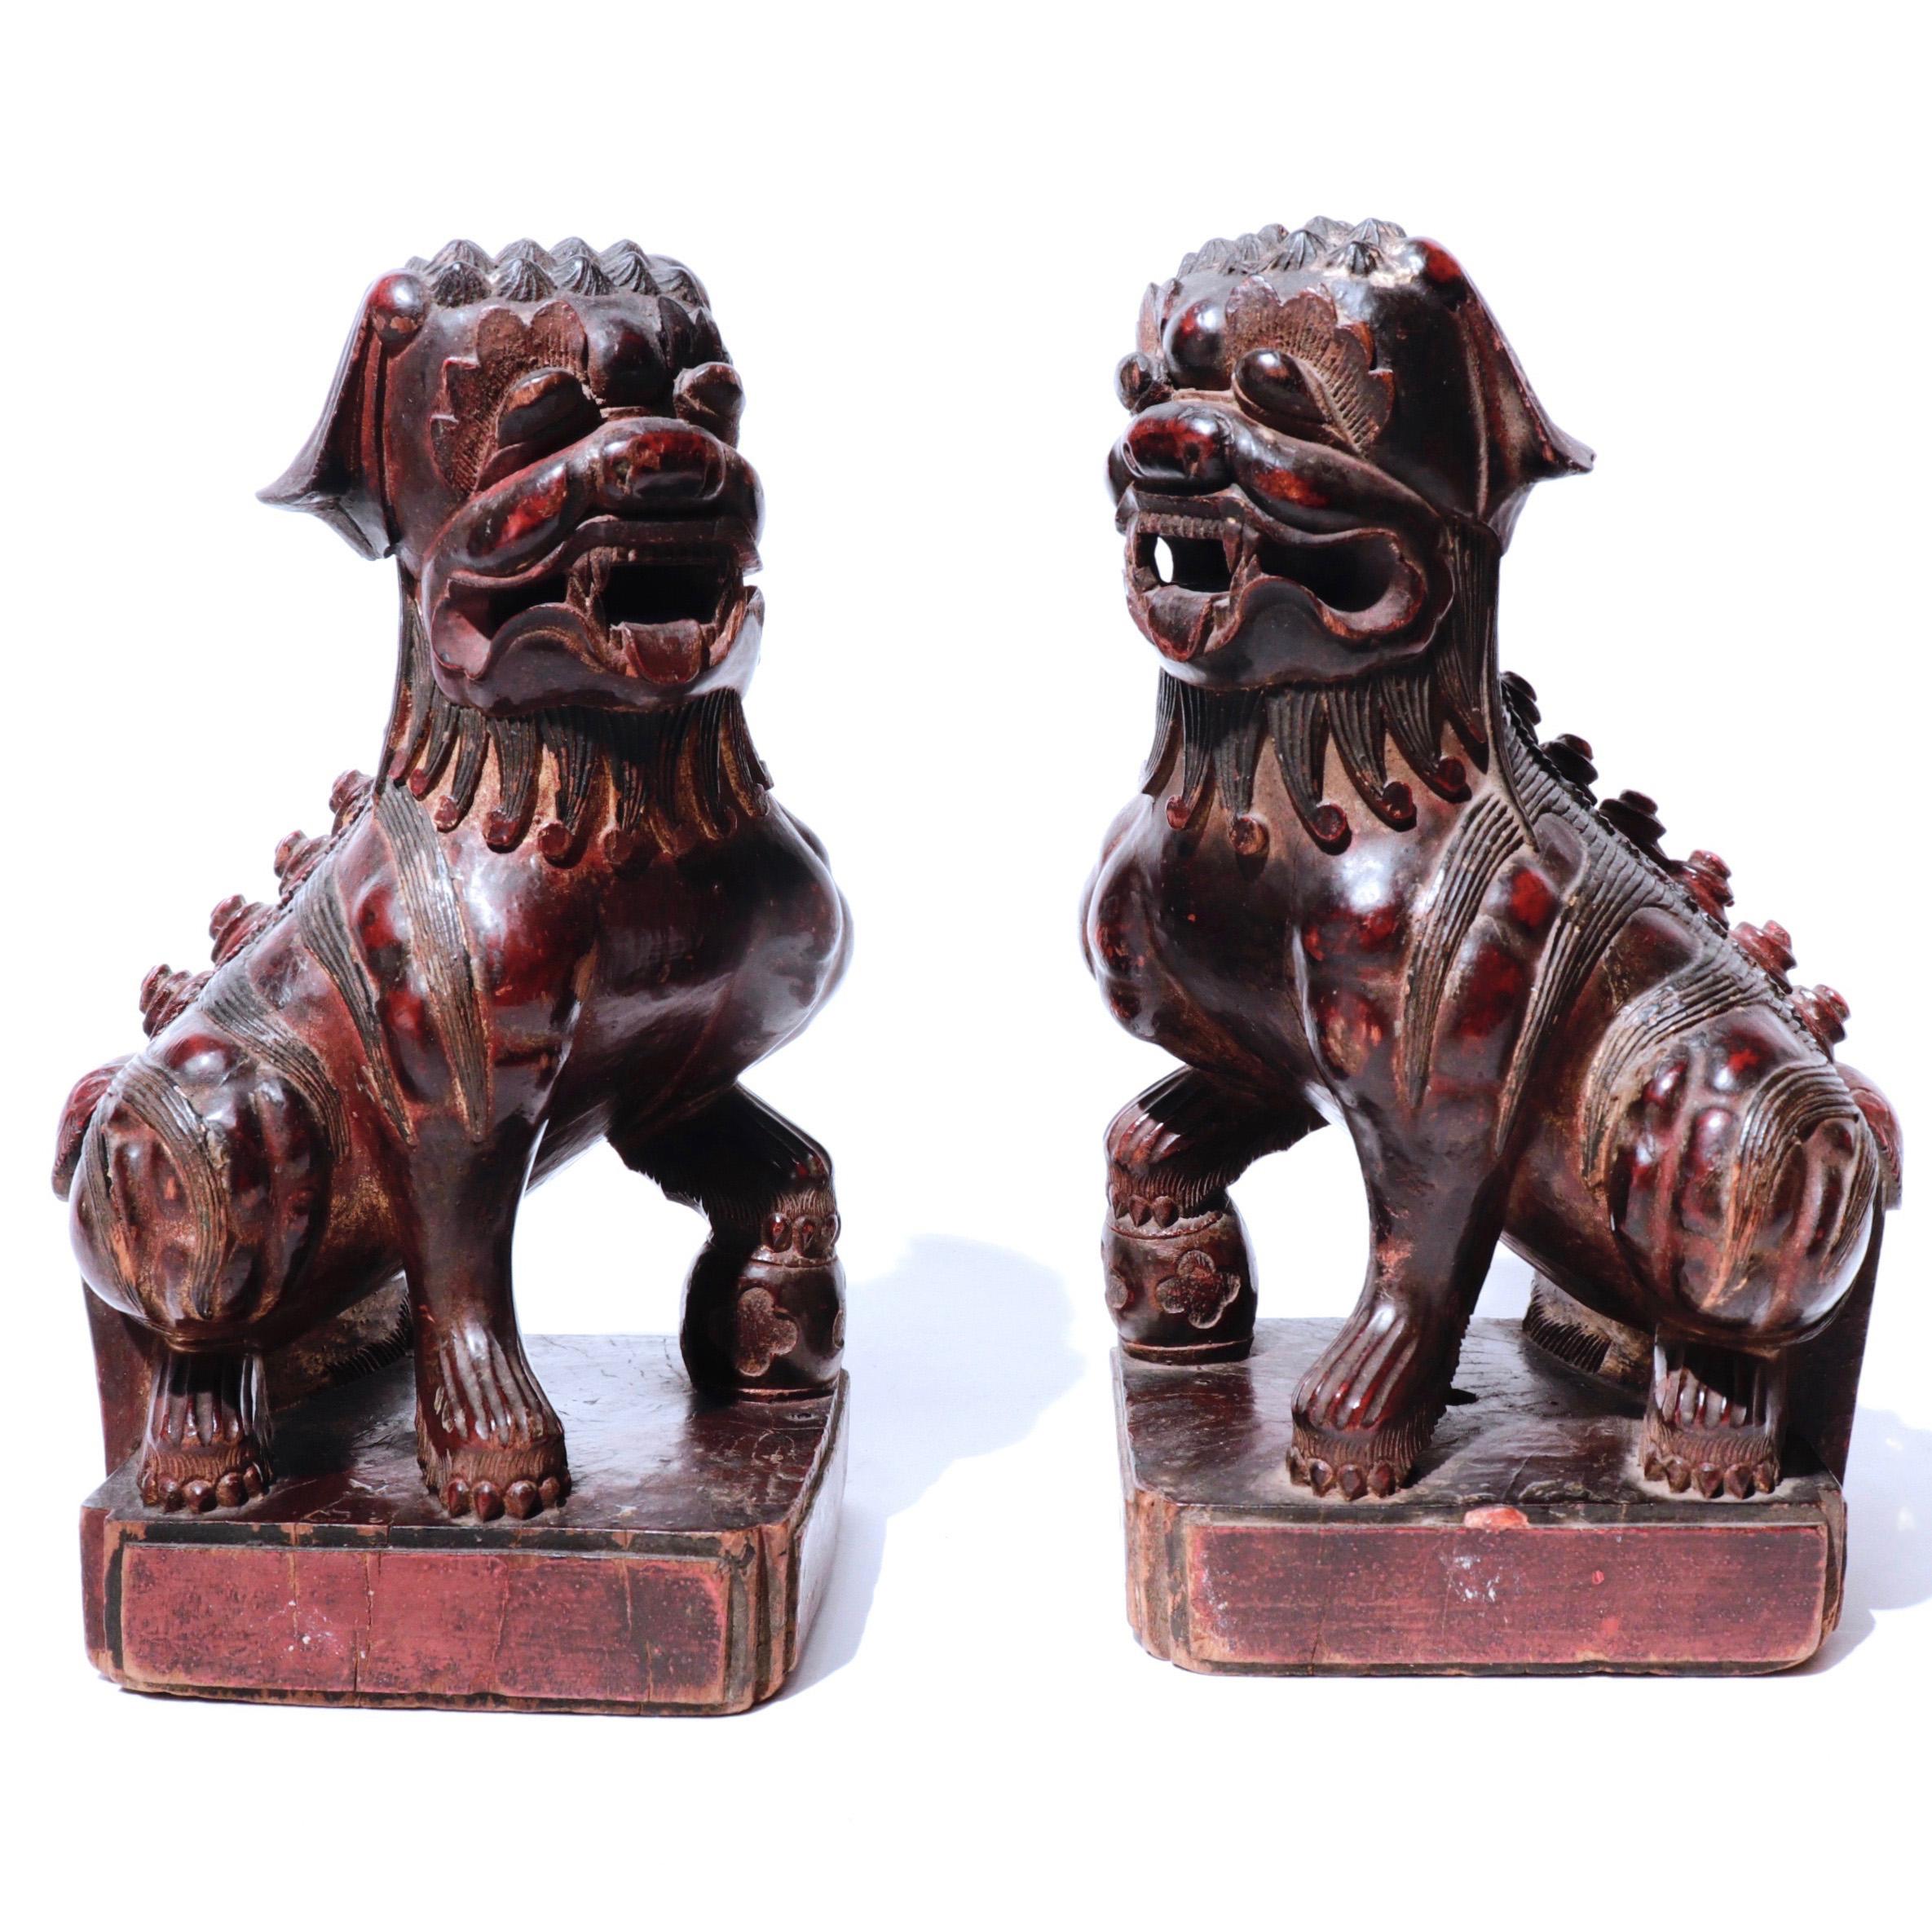 Paire de chiens Fu chinois sculptés dans un seul bloc de bois dur, avec des détails exquis dans un style naïf, les chiens sont opposés, accroupis sur leurs pattes, chacun avec une patte sur un tambour, une musculature détaillée et des spirales de